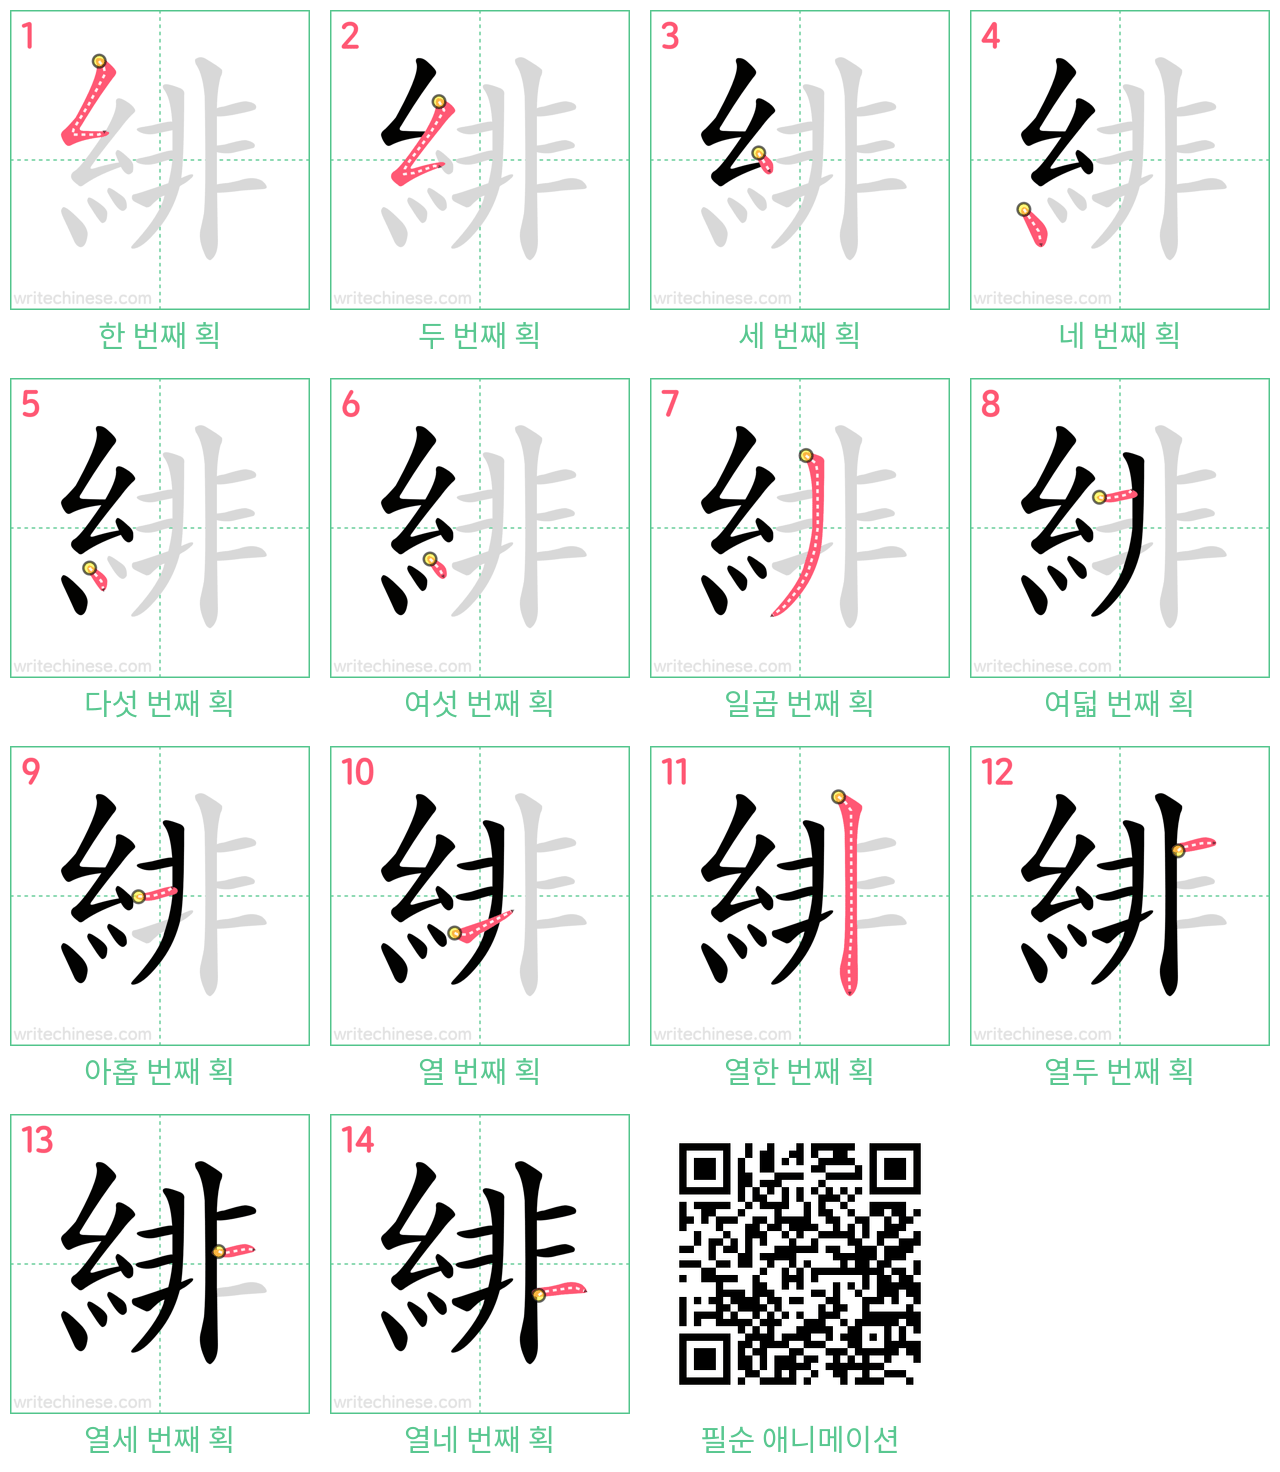 緋 step-by-step stroke order diagrams